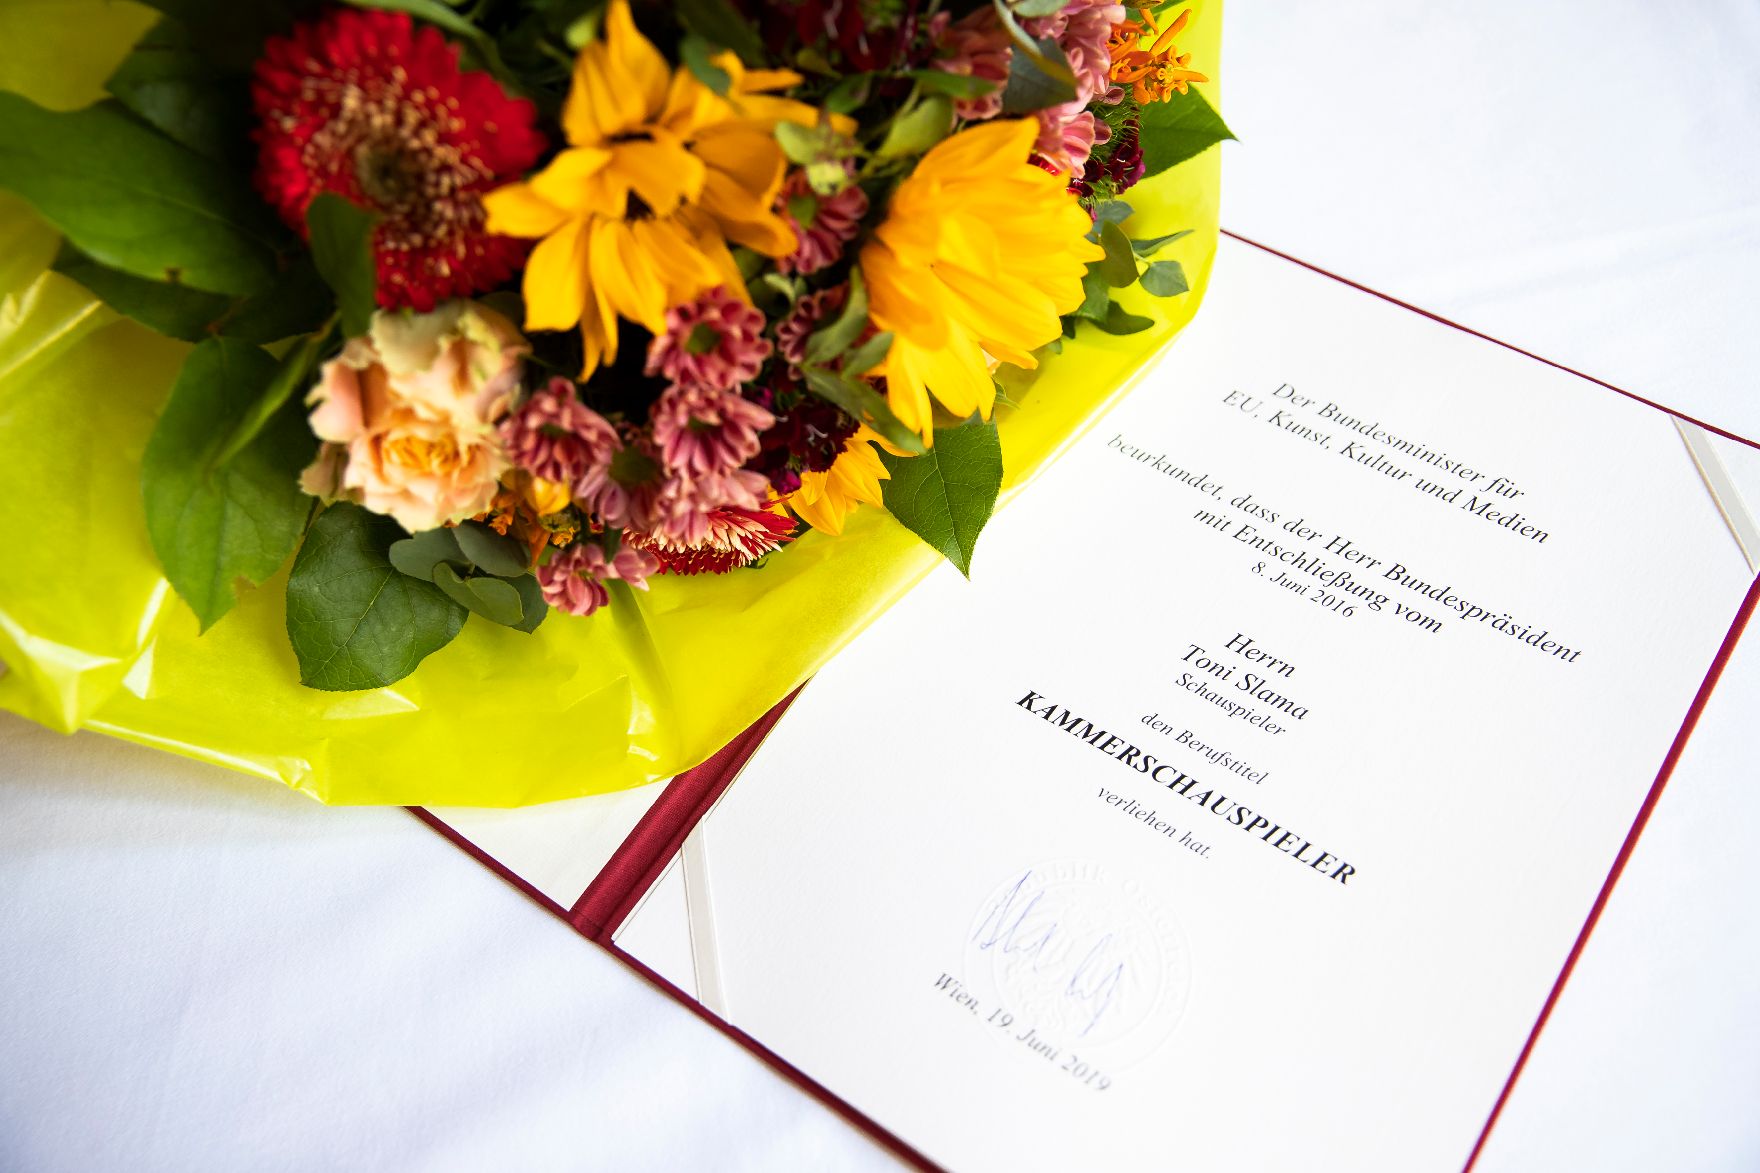 Am 19. Juni 2019 überreichte Christian Kircher die Urkunde, mit der Toni Slama der Berufstitel Kammerschauspieler verliehen wurde.